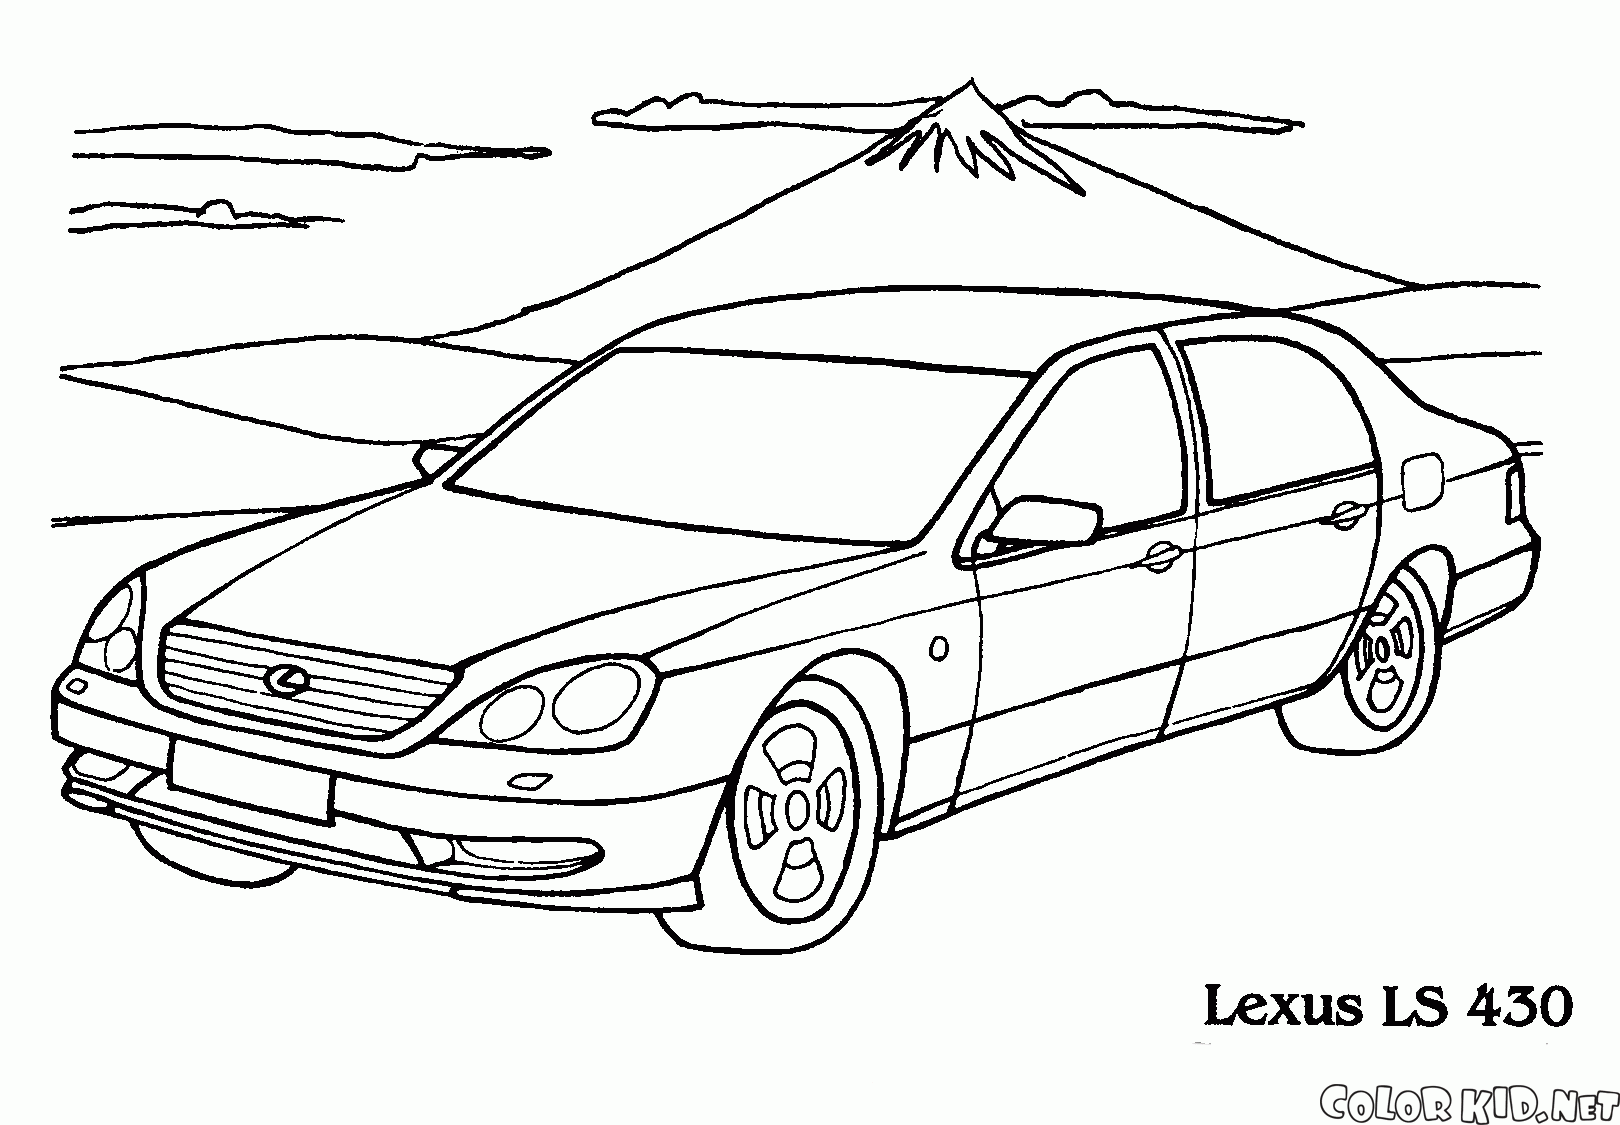 Comfortable Lexus LS 430